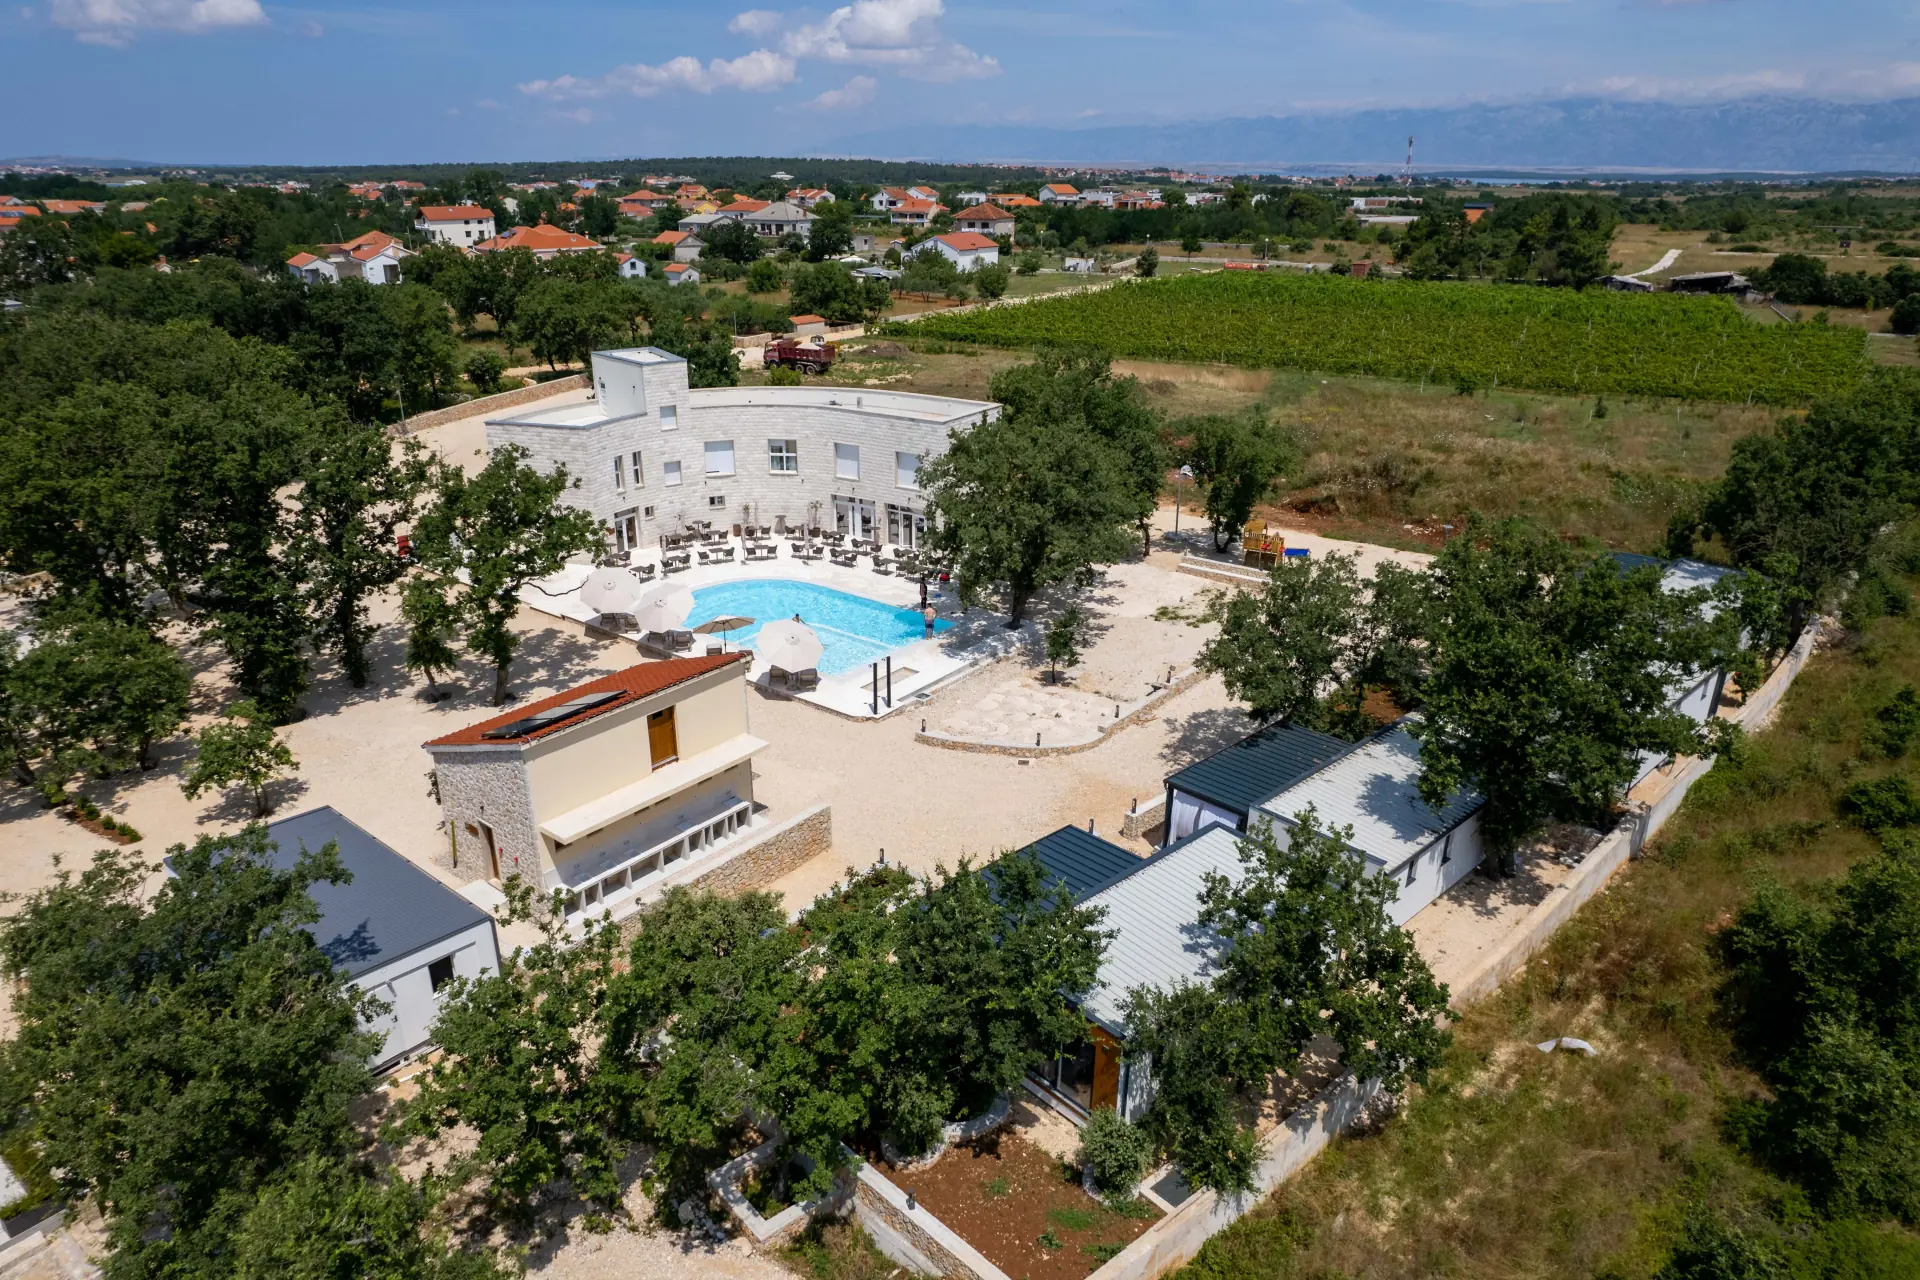 Ptičji pogled na kamp s bazenom u Zatonu, Kamp Dionis Zaton, Hrvatska. Kamp je okružen zelenim drvećem i ima čist plavi bazen.